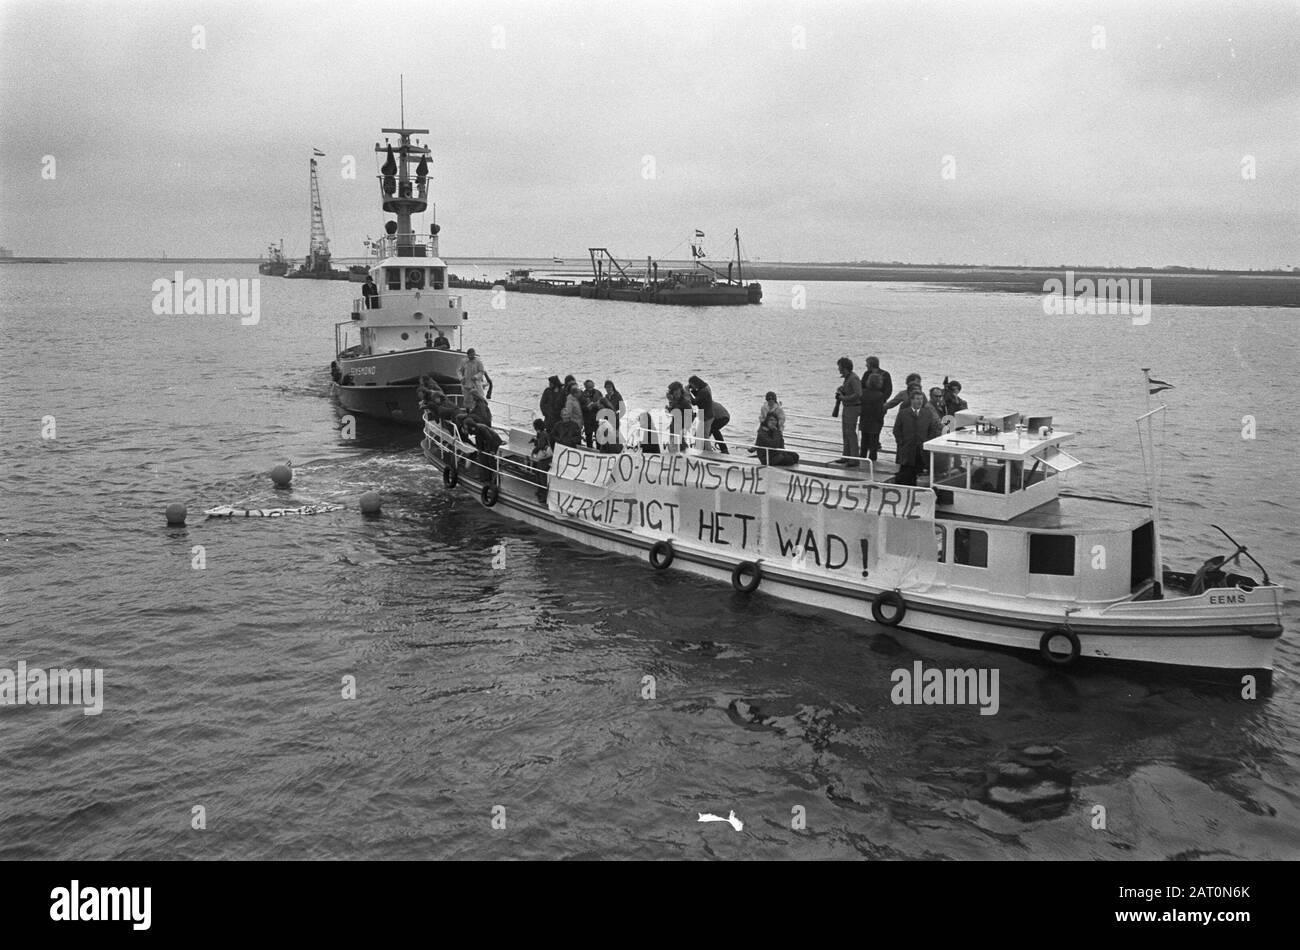 Eröffnung von Eemshaven durch Königin Juliana EIN Boot mit Demonstranten im Eemshaven Datum: 7. Juni 1973 Ort: Eemshaven Schlüsselwörter: Boote, Demonstranten, Banner Stockfoto